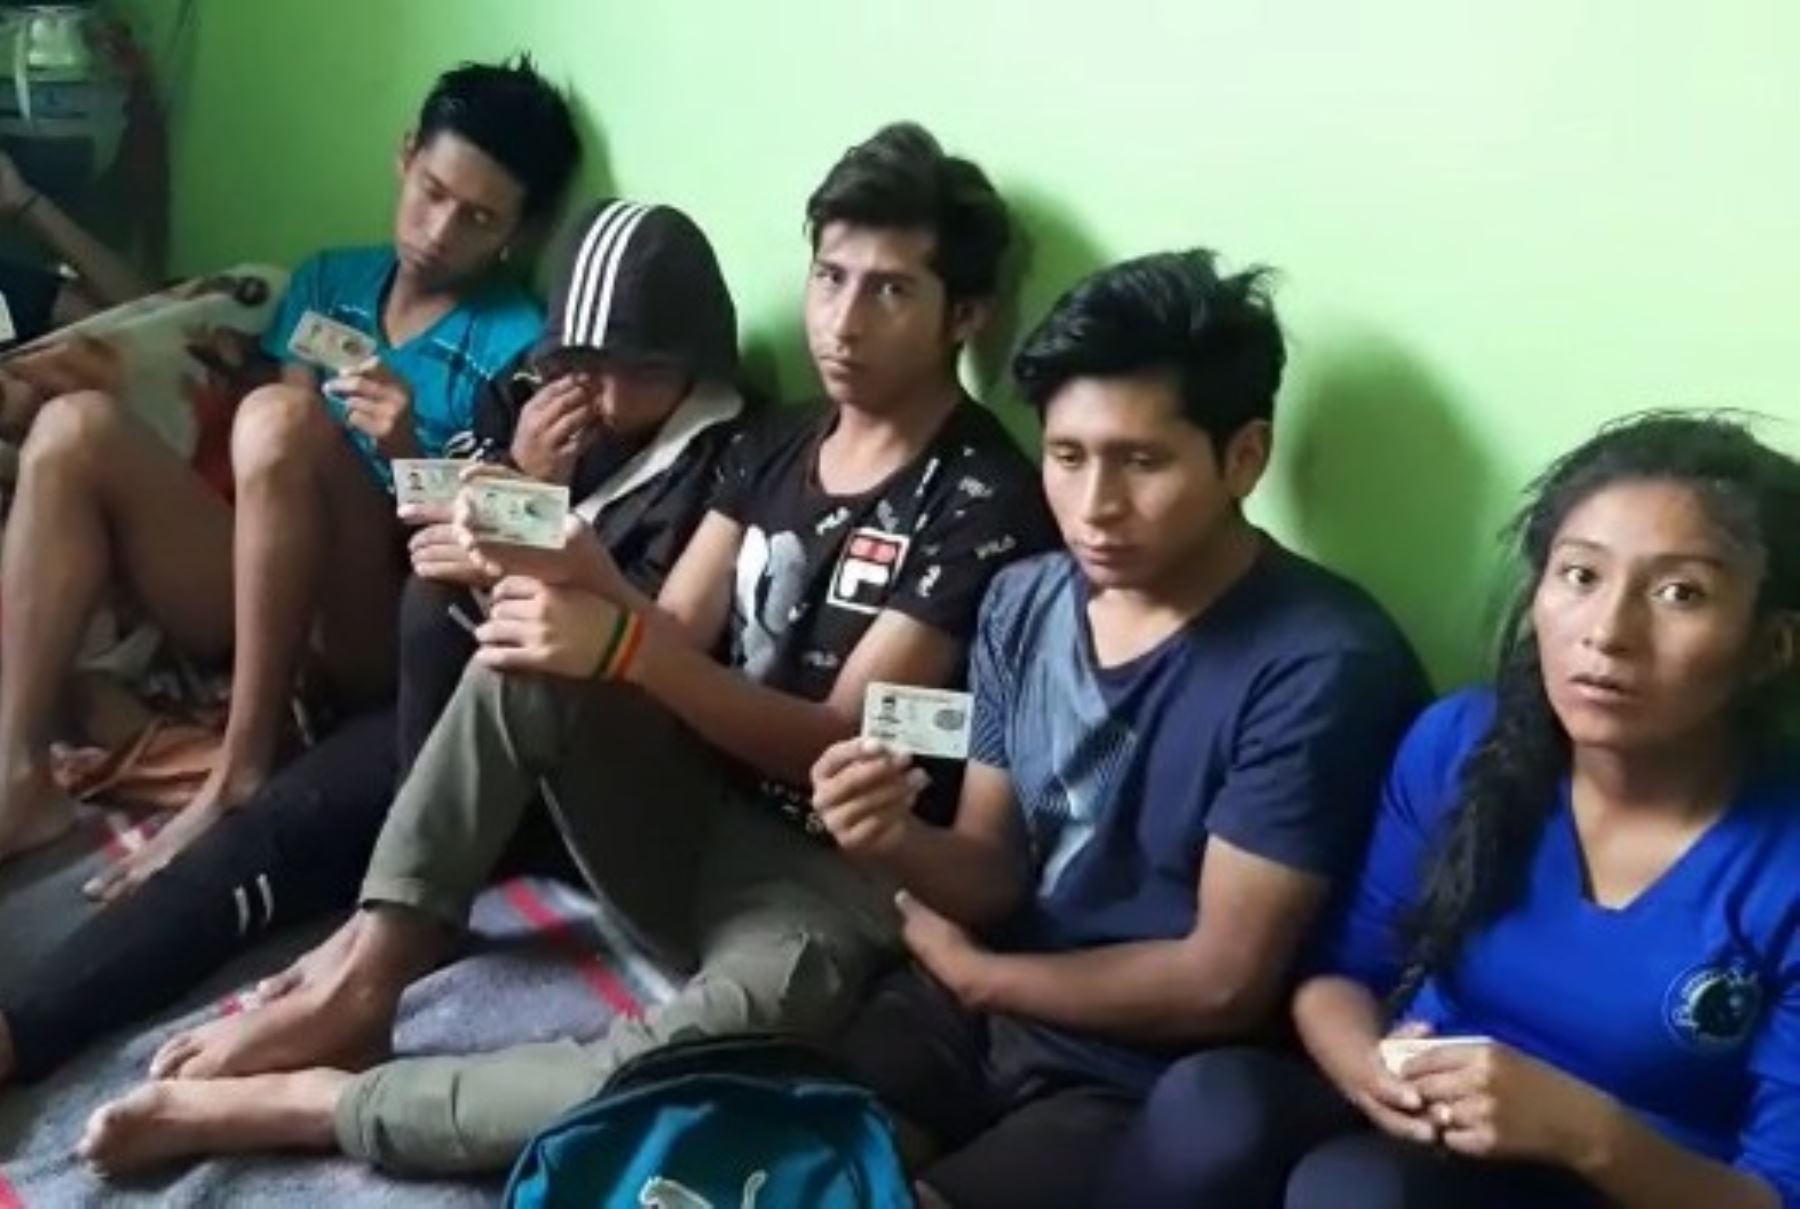 Un total de 26 jóvenes bolivianos se encuentran varados en Huancayo debido al inmovilización social obligatoria solicitan ayuda solidaria para afrontar la cuarentena. Foto: Pedro Tinoco